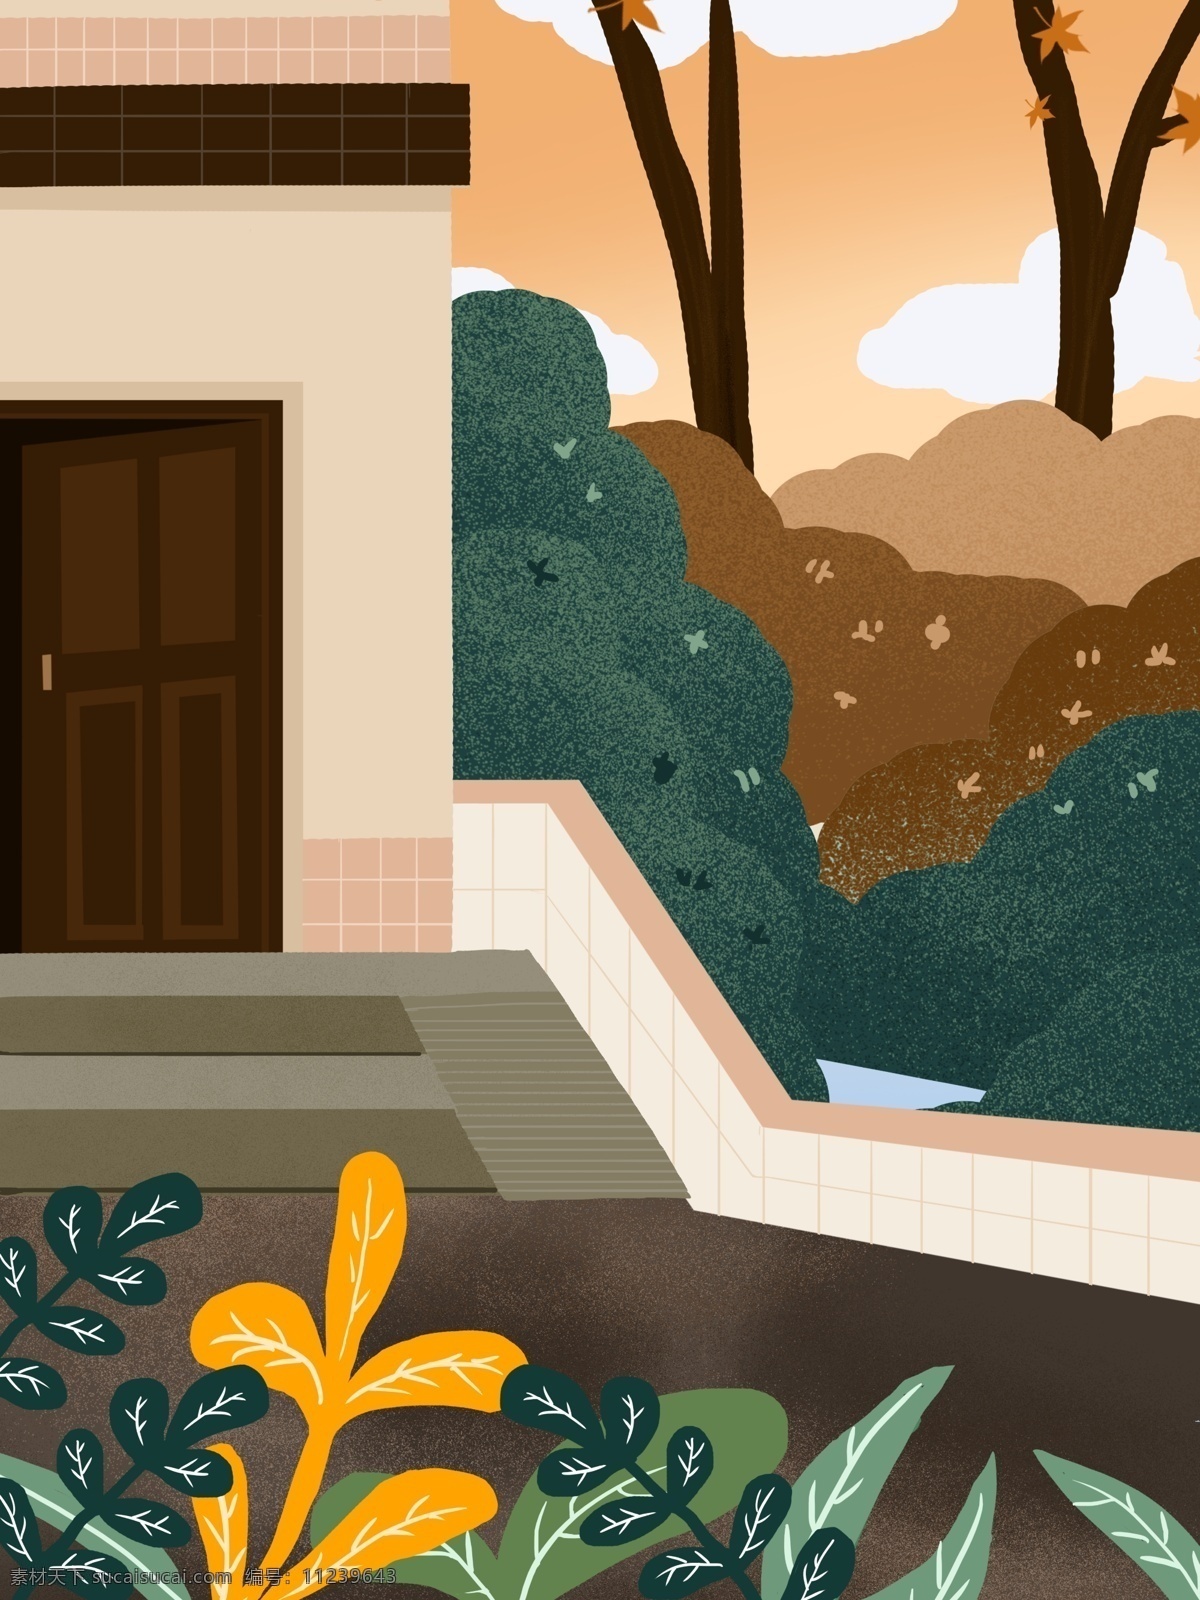 清新 浪漫 手绘 房屋 插画 背景 广告背景 背景素材 树木 植物 背景展板 房屋插画背景